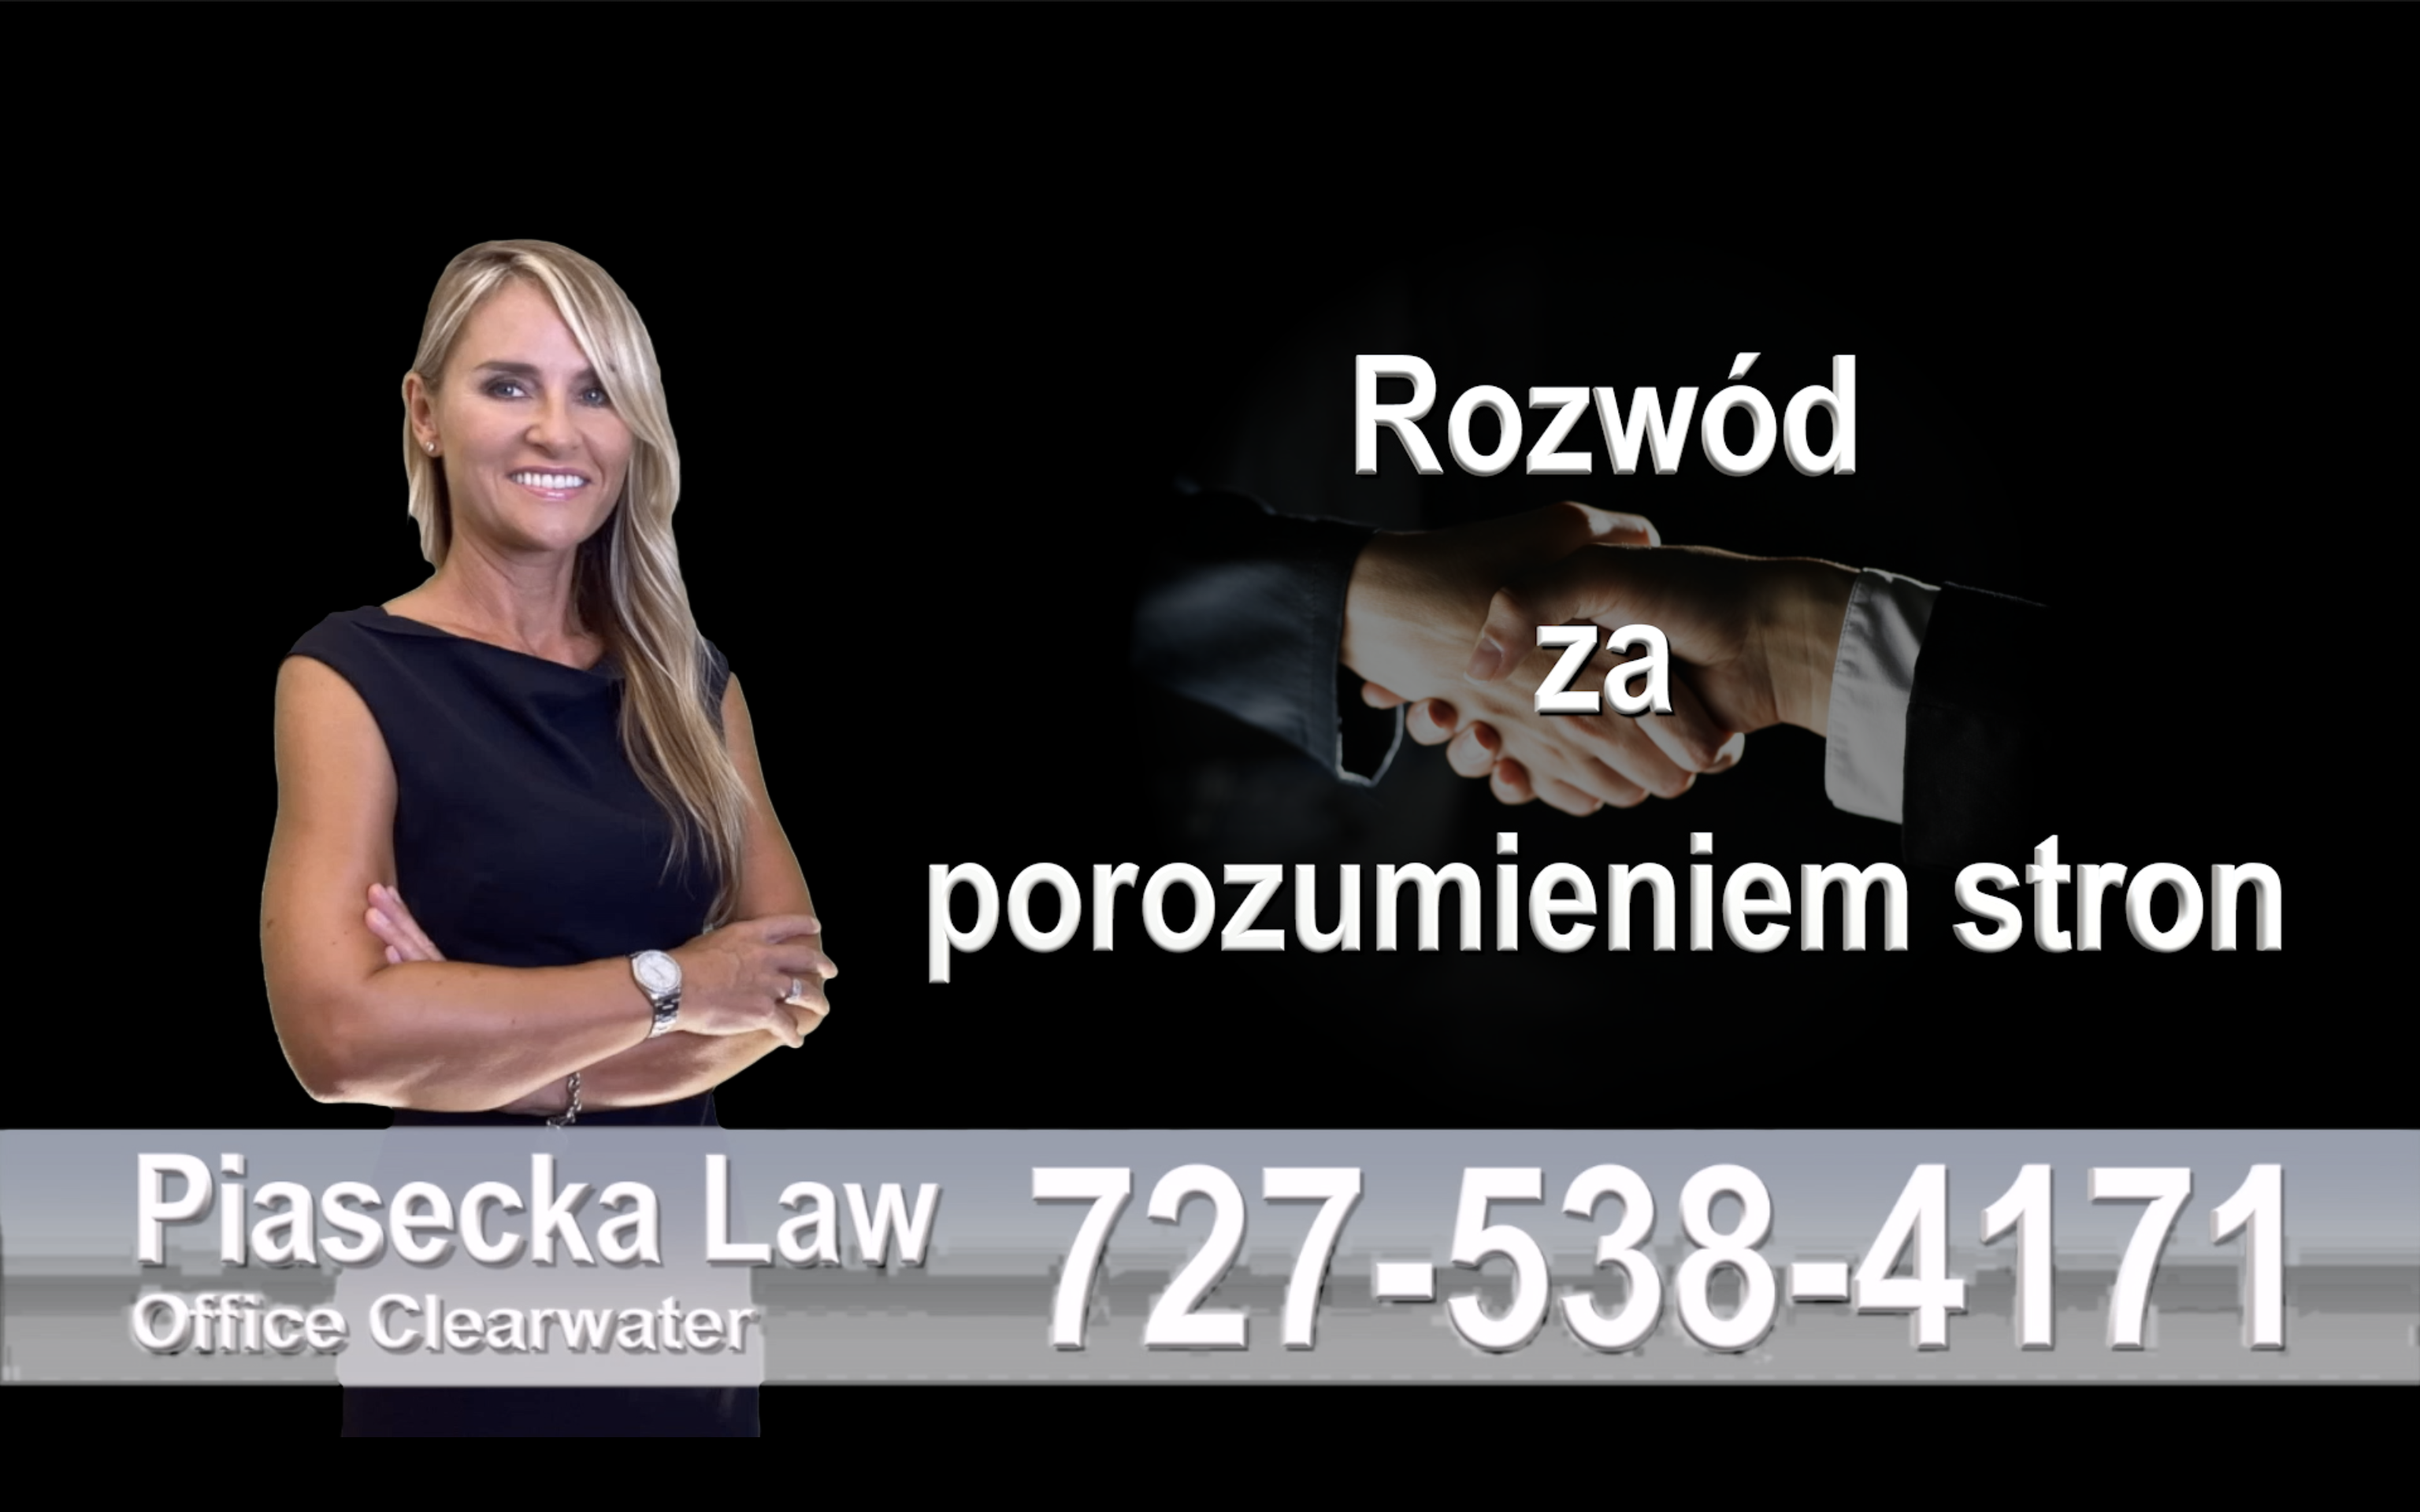 New Port Richey Polski prawnik rozwód za porozumieniem stron, collaborative divorce